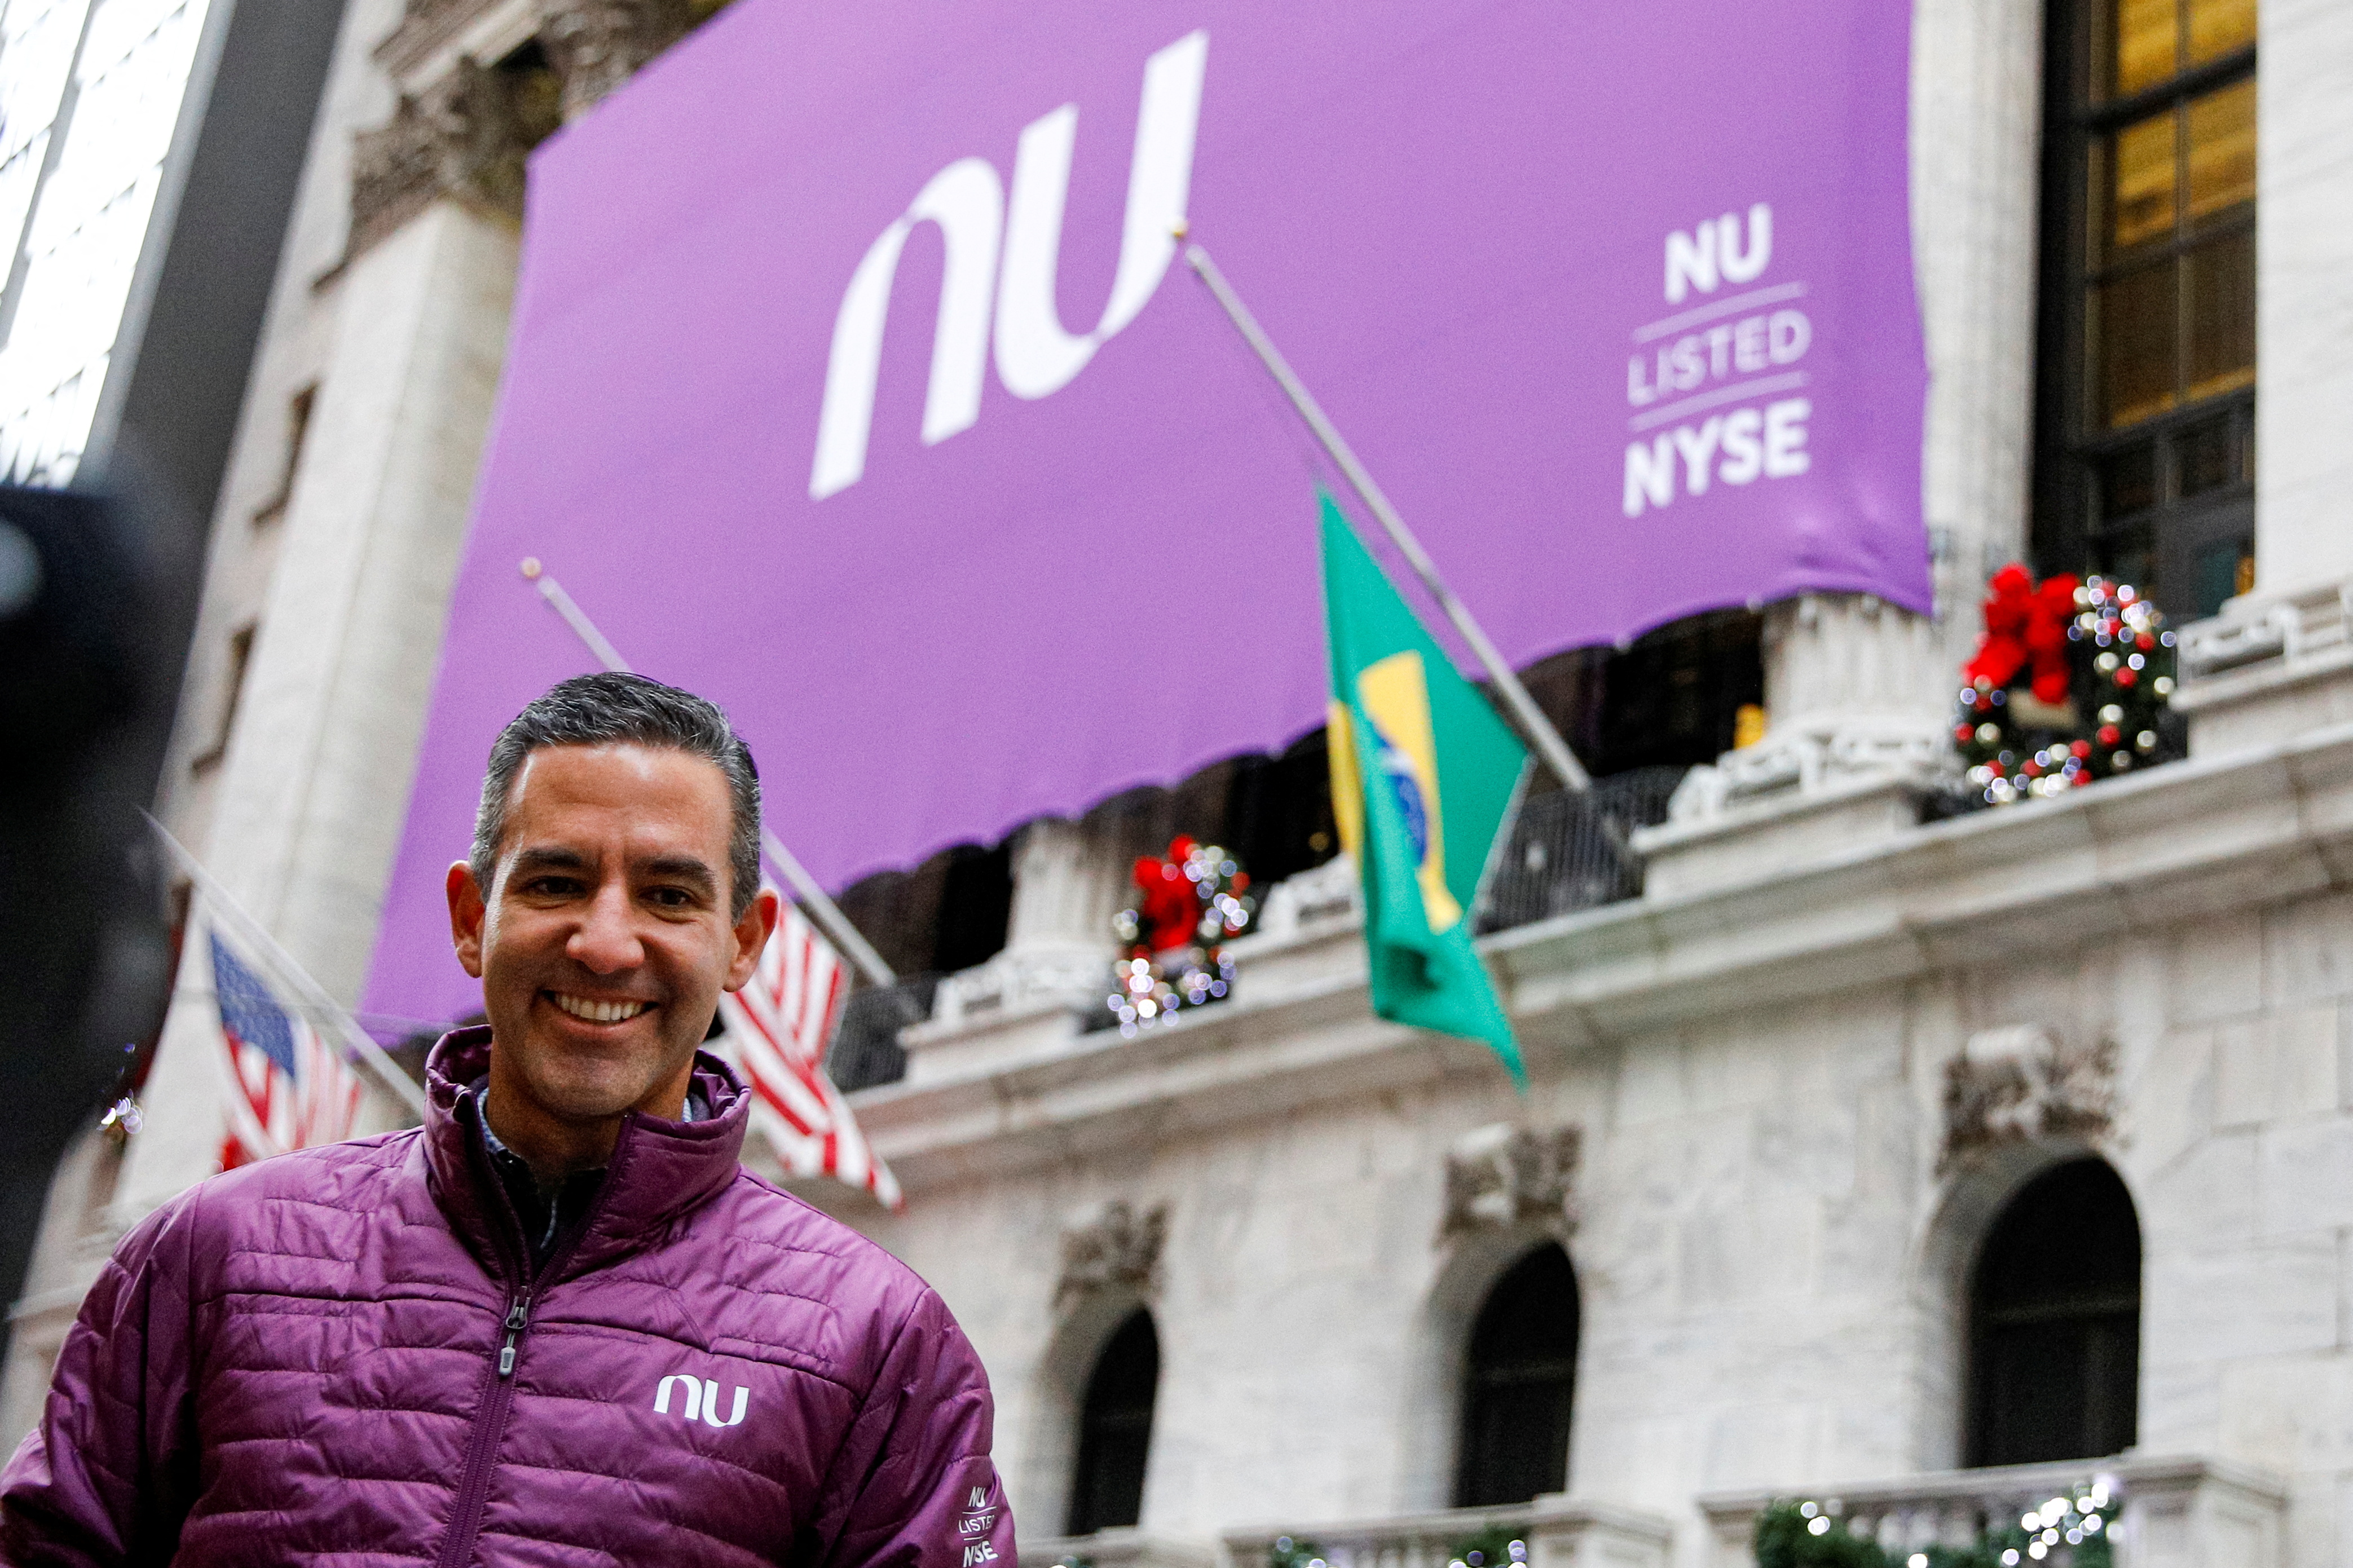 FOTO DE ARCHIVO: David Vélez, fundador y director ejecutivo de Nubank Nubank, la startup brasileña de tecnología financiera, posa afuera de la Bolsa de Valores de Nueva York (NYSE) para celebrar la salida a bolsa de la compañía en Nueva York, EE. UU., el 9 de diciembre de 2021. REUTERS/Brendan McDermid/Foto de archivo